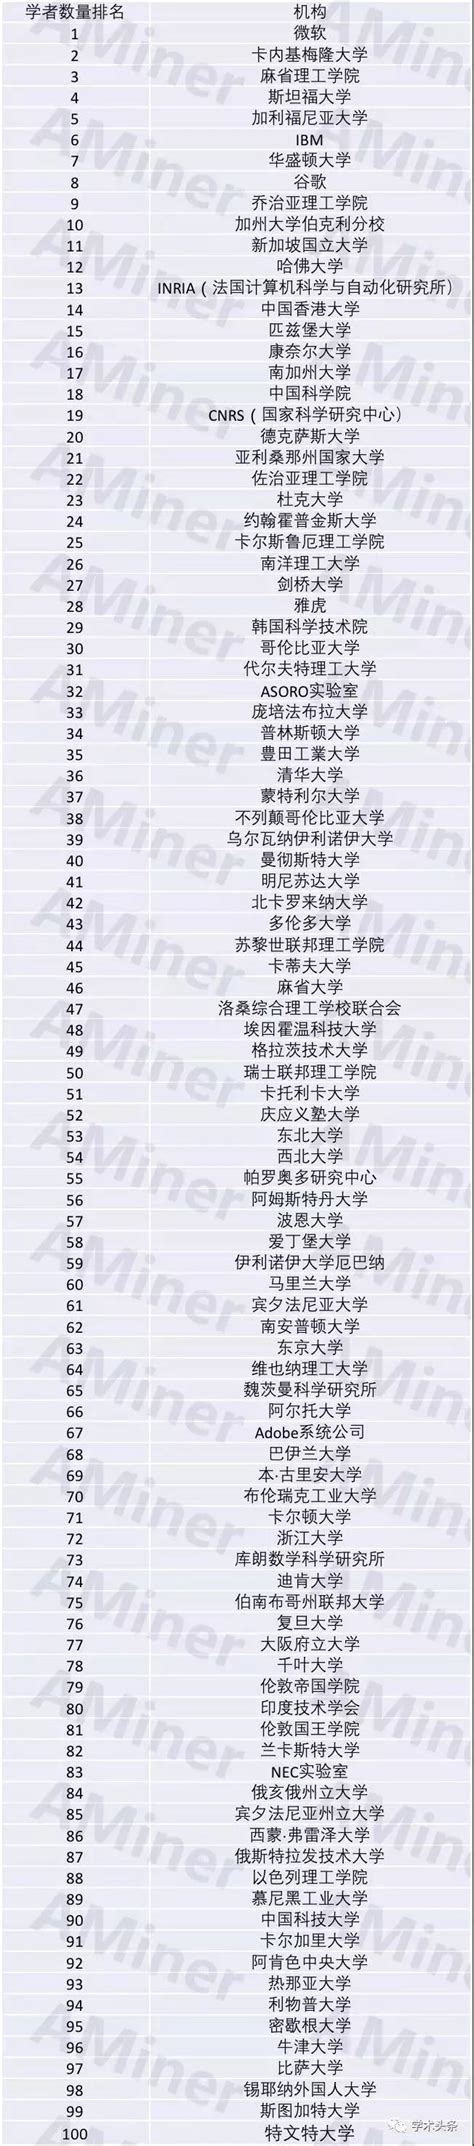 AI领域全球最具影响力机构TOP100排名，中国哪六所机构上榜了？ | 雷峰网